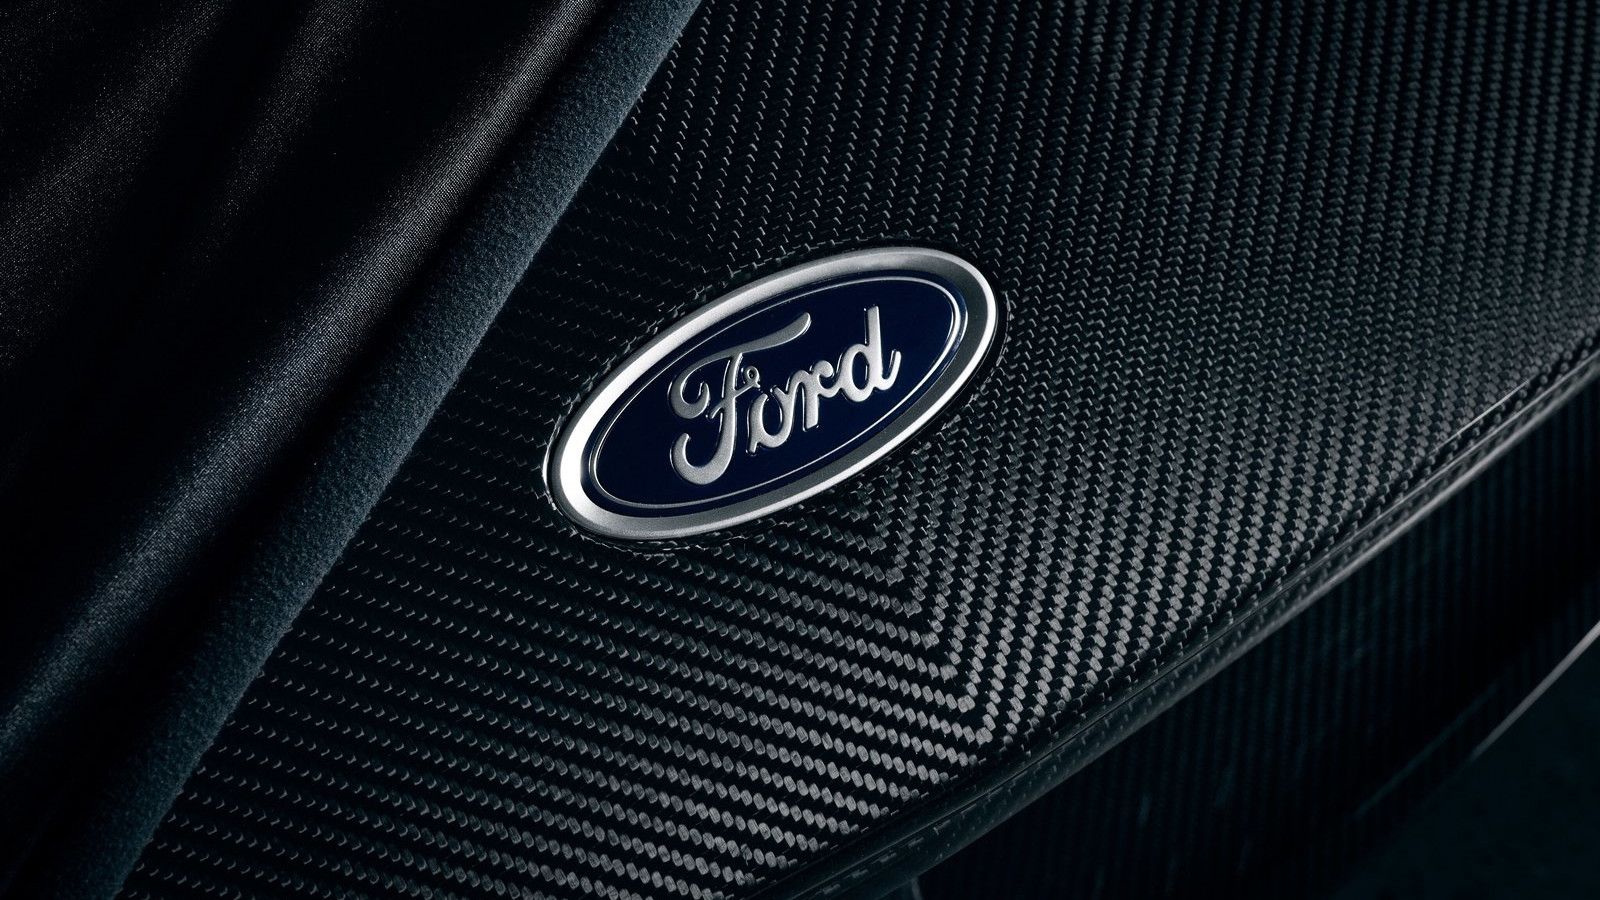 Hood emblem on a Ford GT Liquid Carbon supercar.